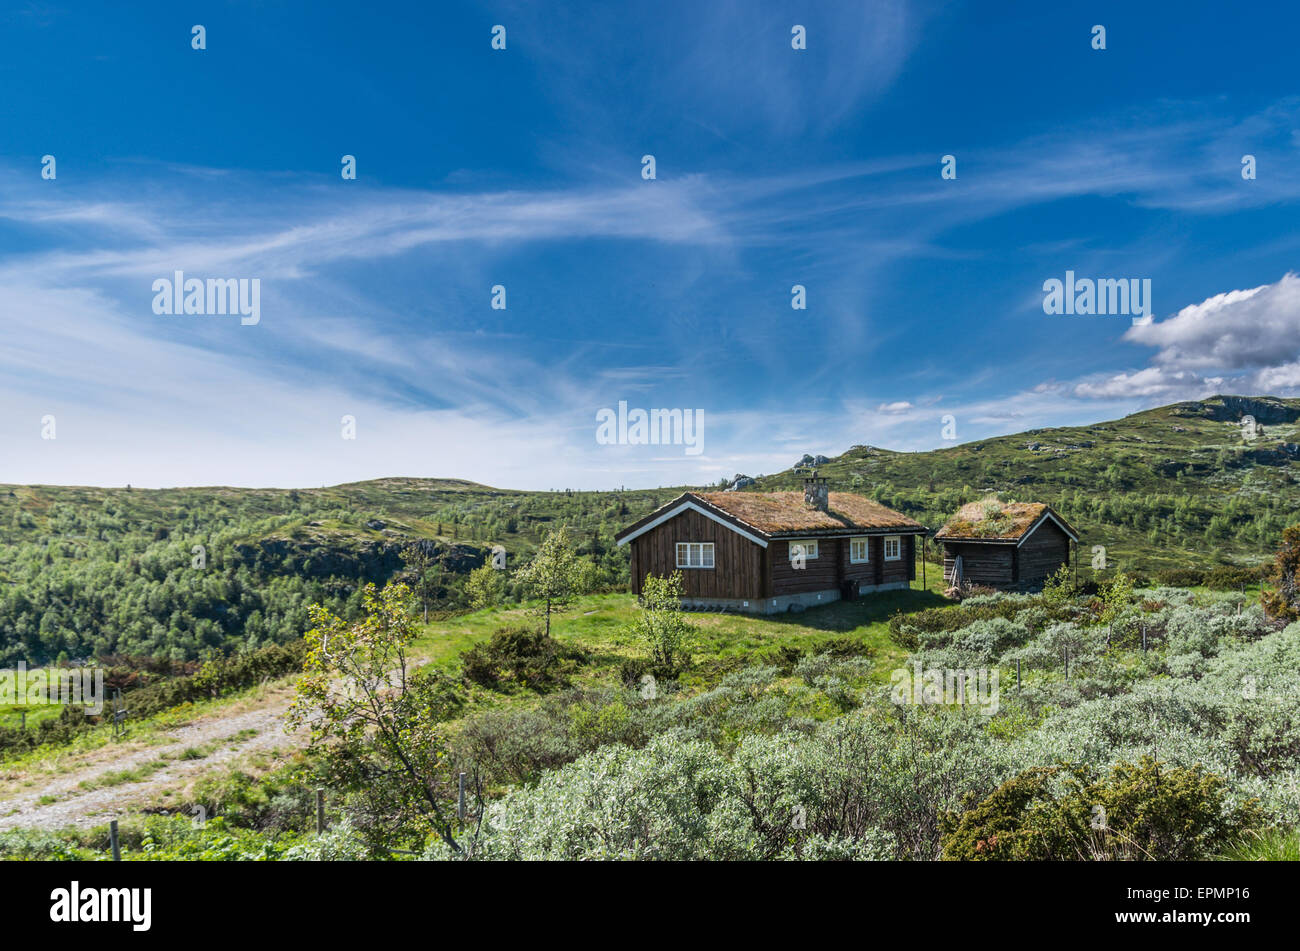 Entfernten Rasen Dach Hütte in Norwegen unter strahlend blauem Himmel Stockfoto